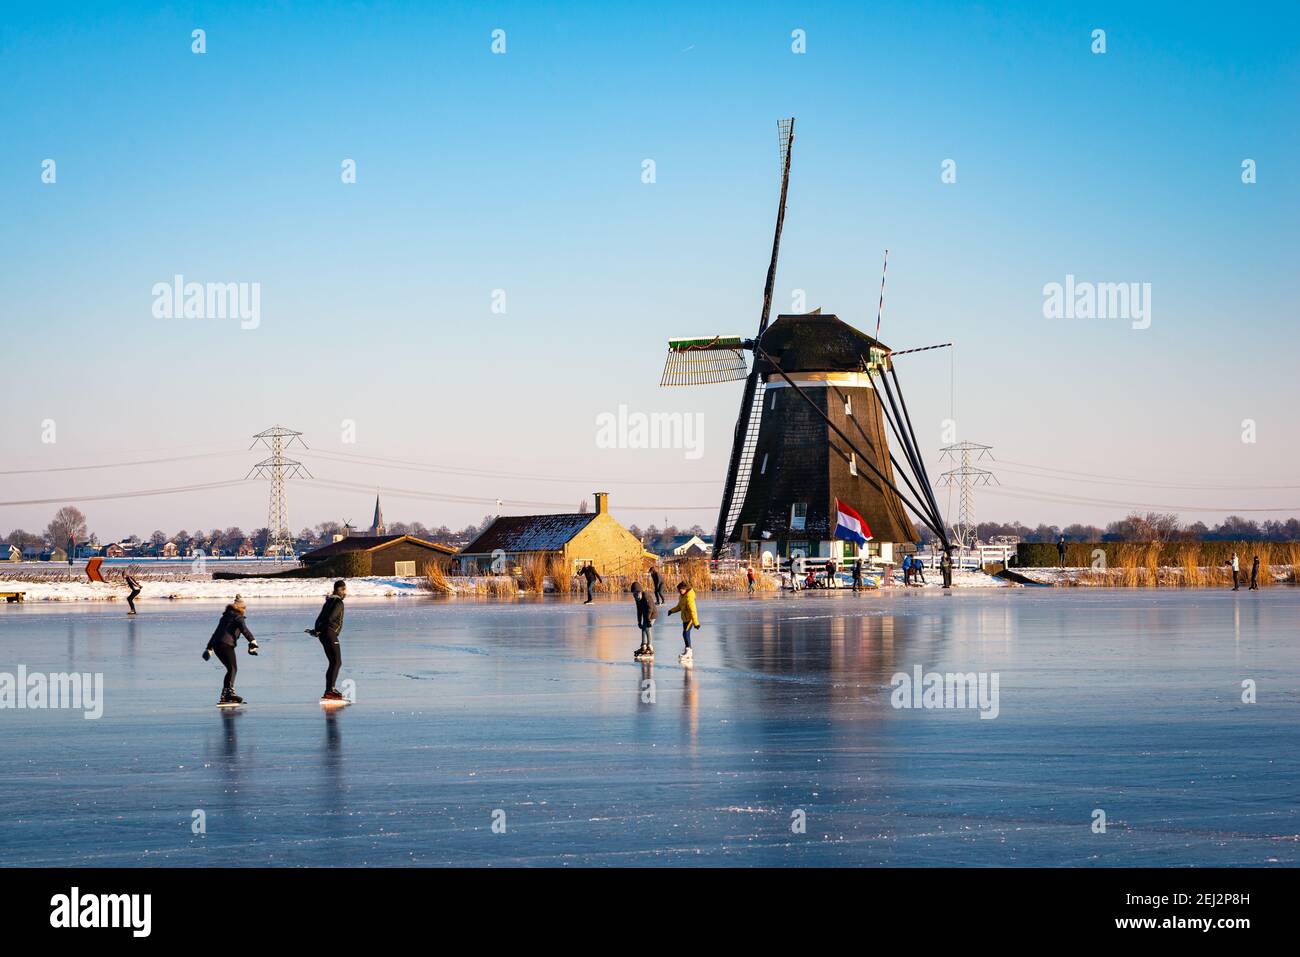 Escena clásica holandesa con patinadores de hielo en un molino de viento tradicional durante un período frío en invierno. Foto de stock